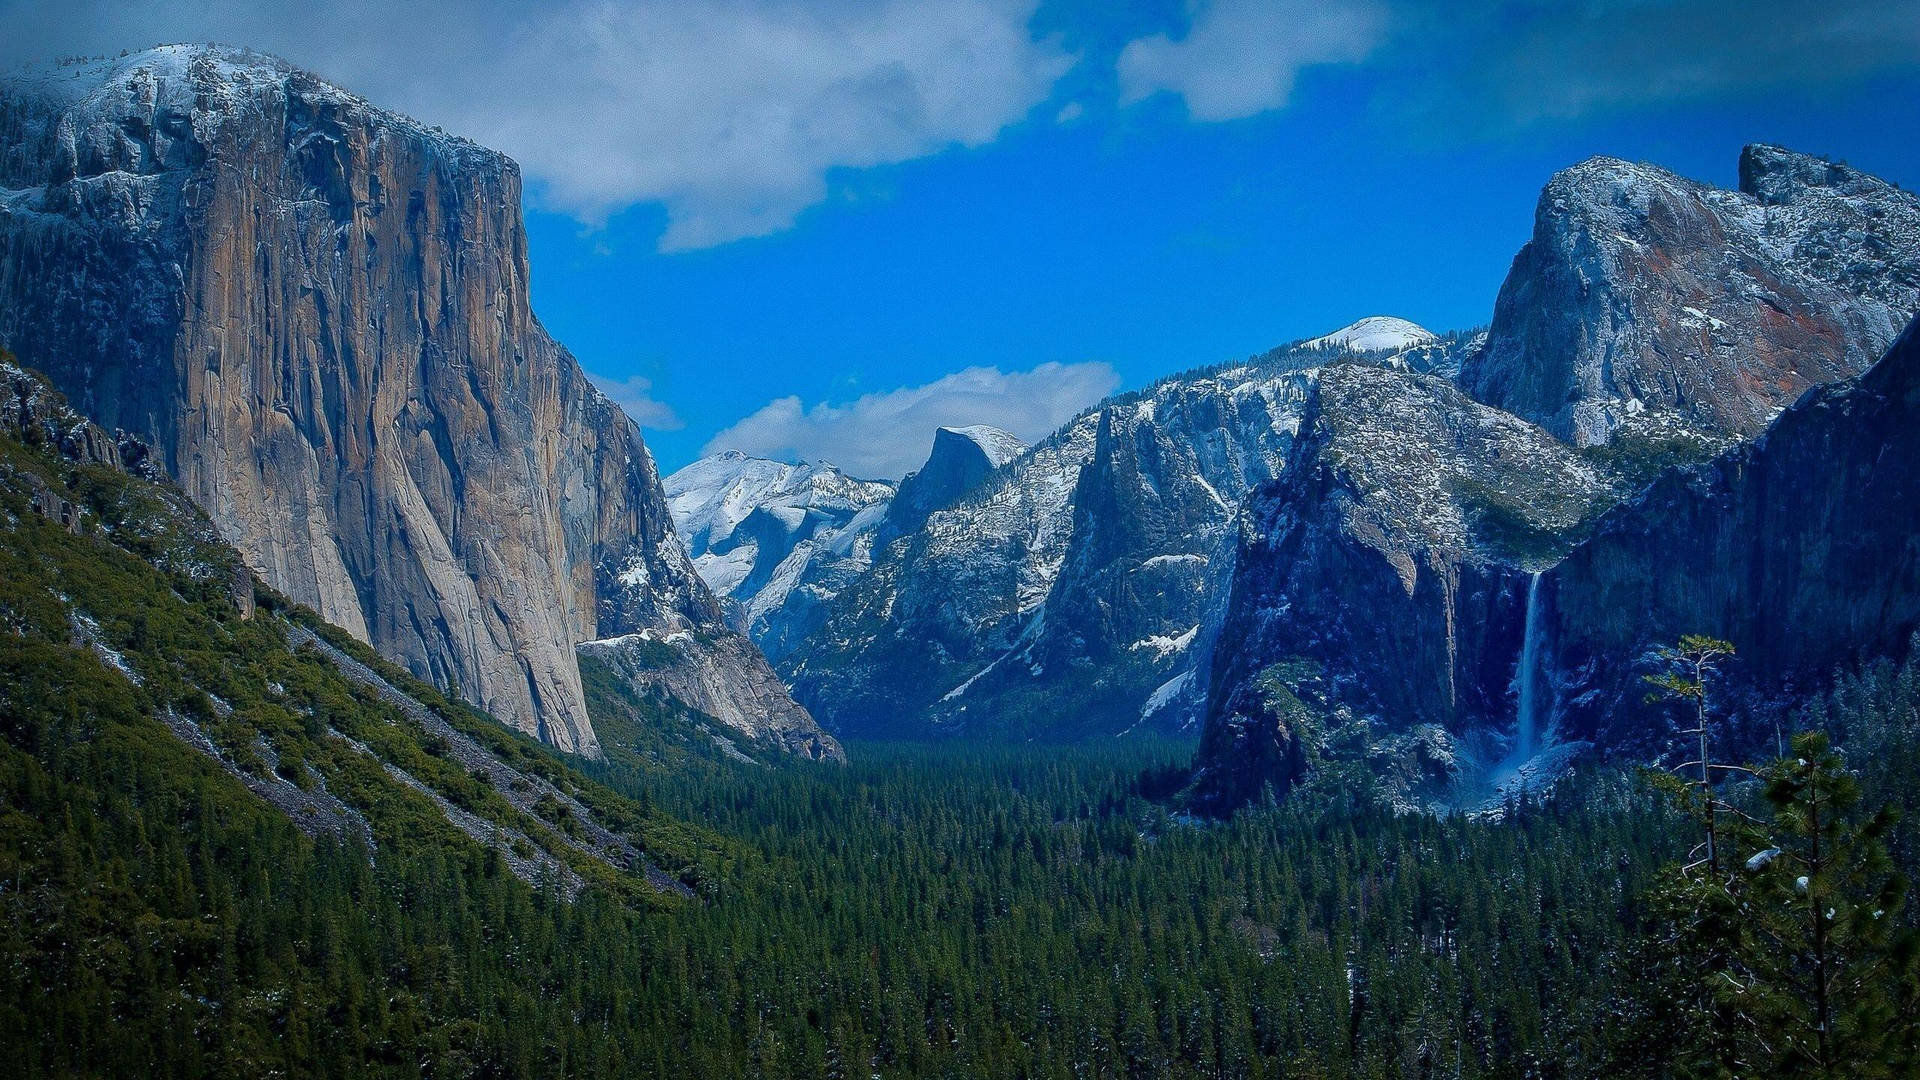 Free Yosemite Wallpaper Downloads, [100+] Yosemite Wallpapers for FREE |  